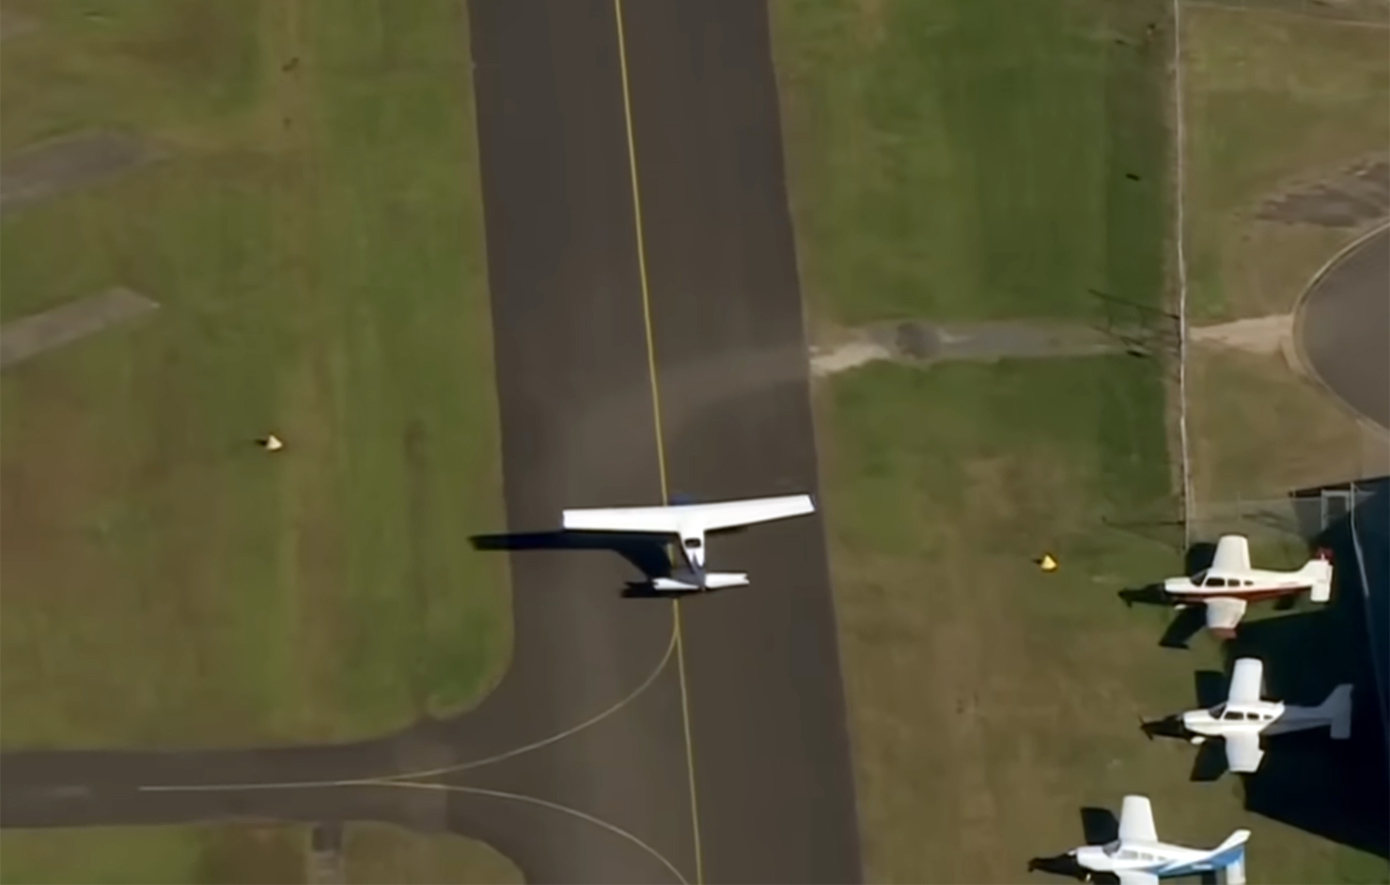 Η δραματική στιγμή που αεροπλάνο περνά ξυστά από στέγες στο Σίδνεϊ πριν προσγειωθεί με την κοιλιά